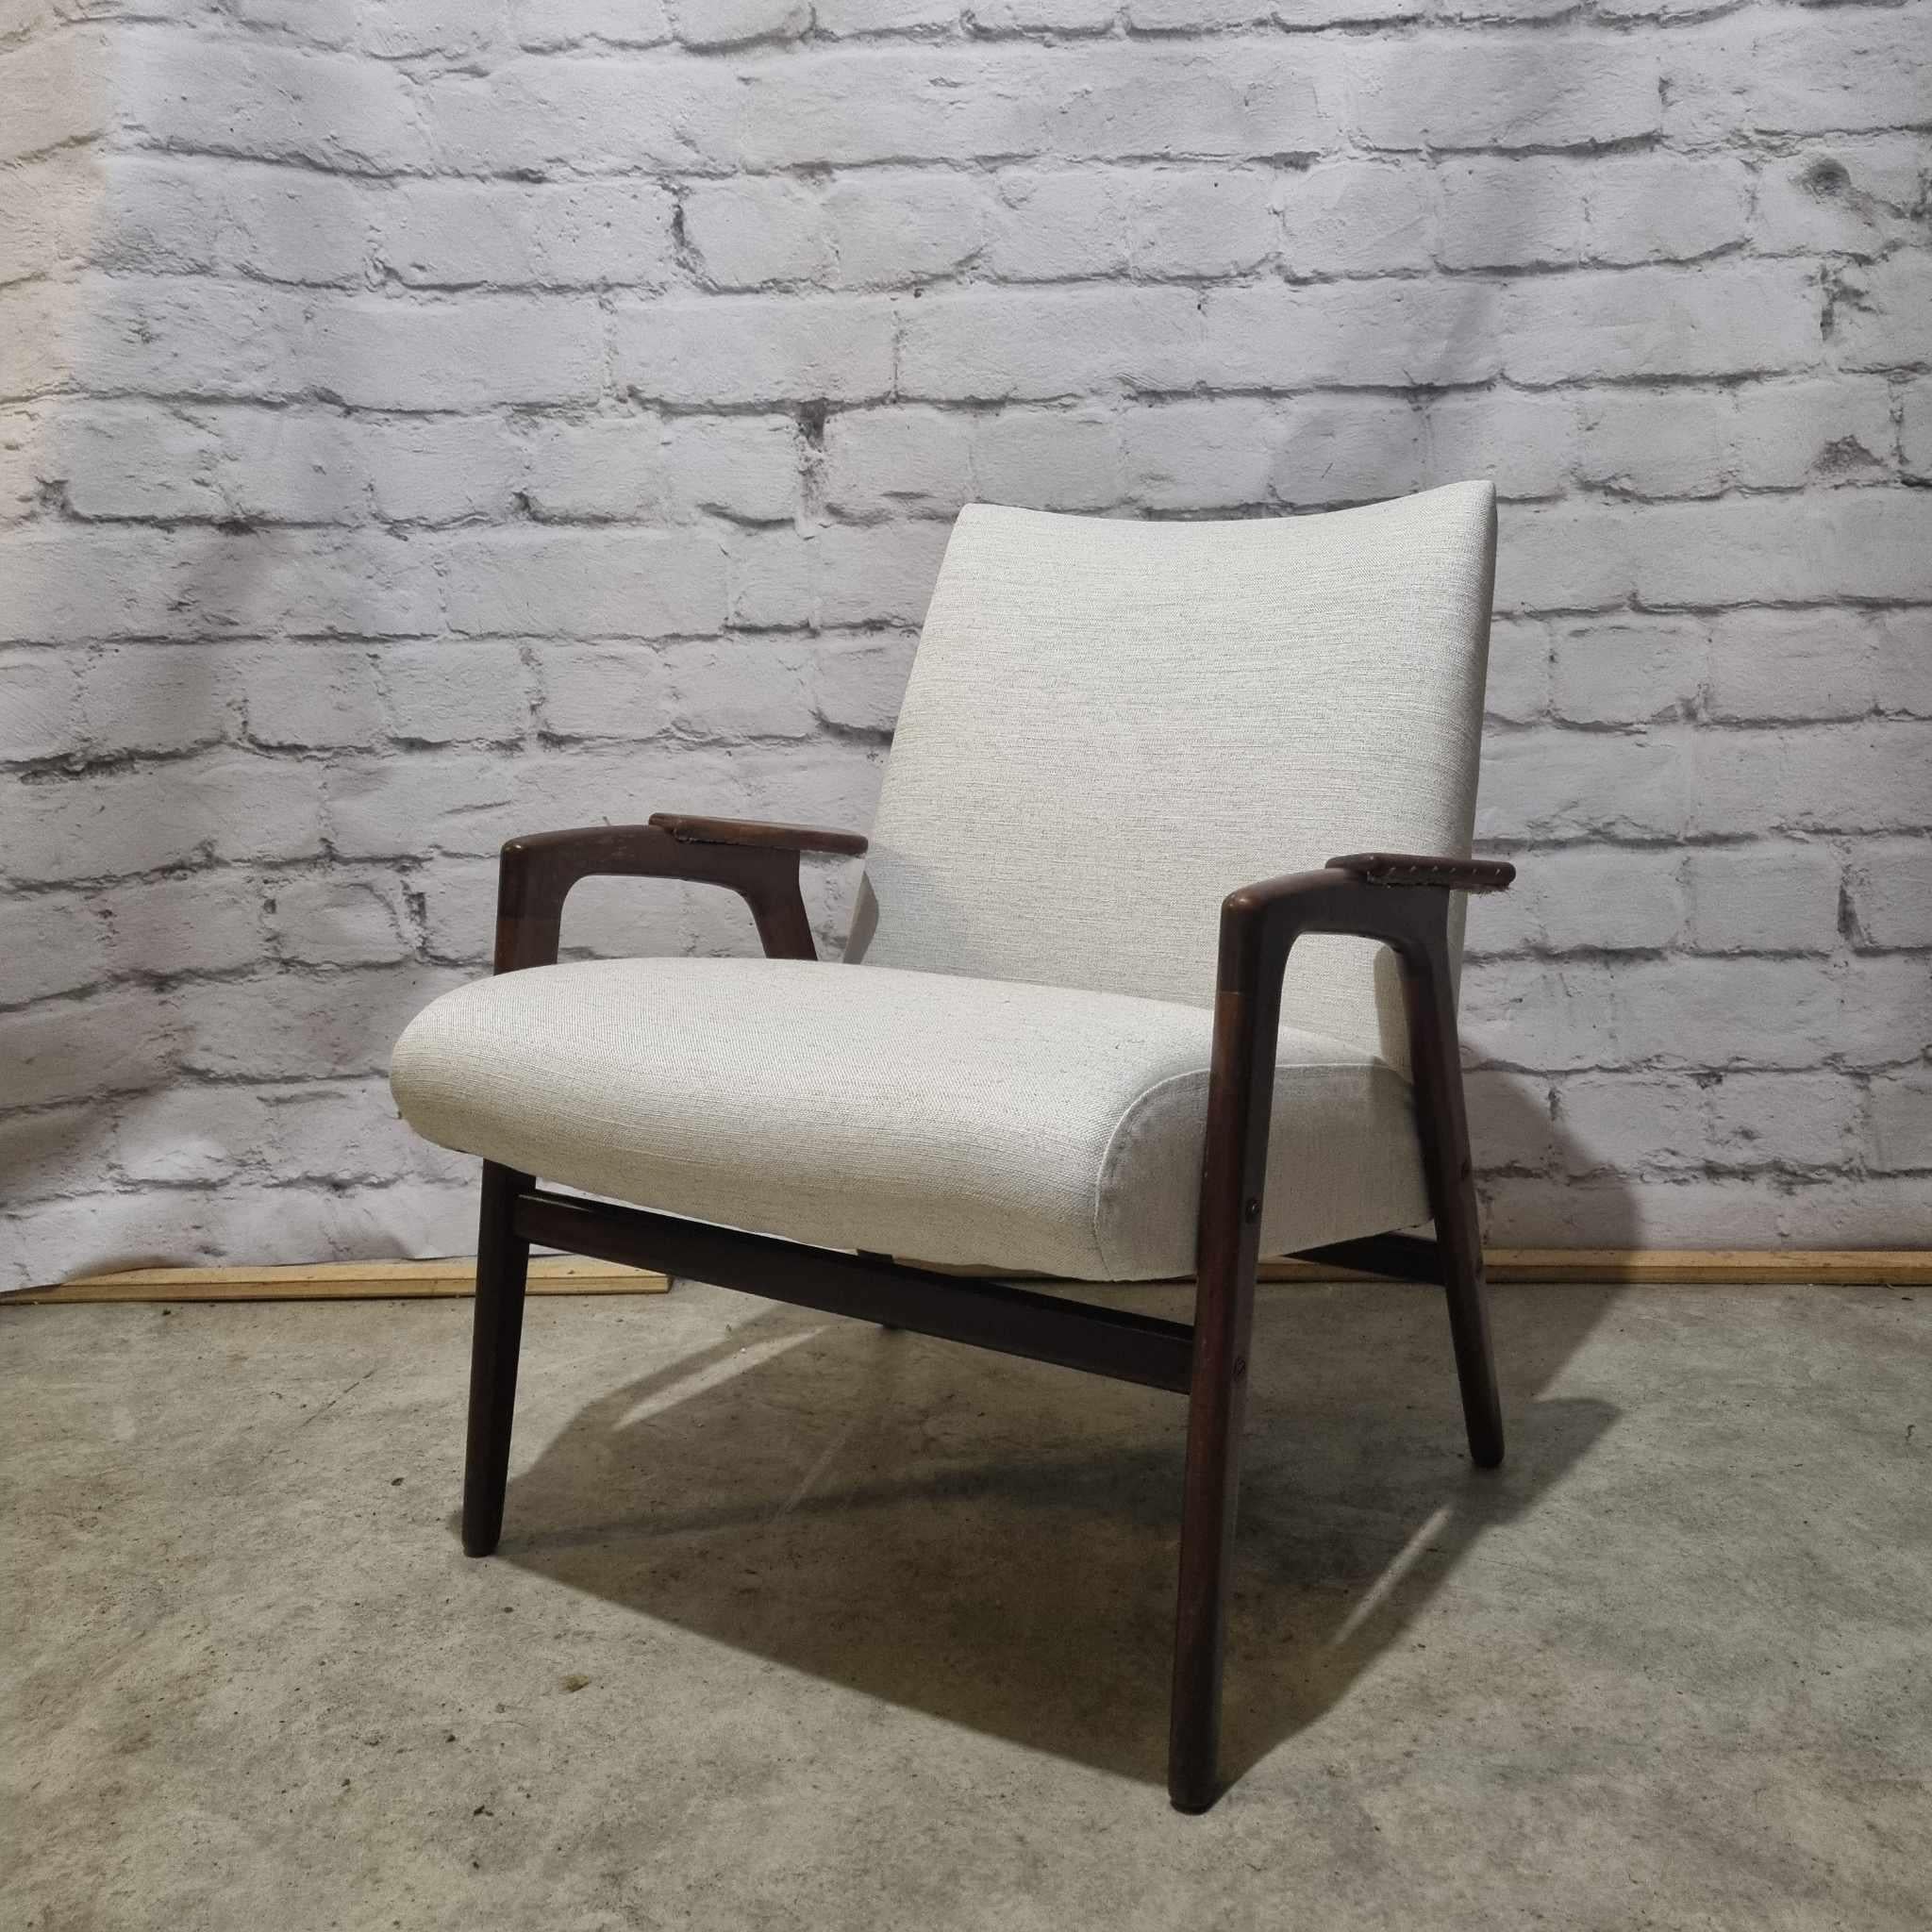 Ein schöner und sehr bequemer Ruster-Sessel, der von dem führenden schwedischen Designer Yngve Ekstrom für Swedese entworfen wurde und in den Niederlanden von der bekannten Firma Pastoe verkauft wird.
Der ursprüngliche Entwurf des Ruster-Sessels war